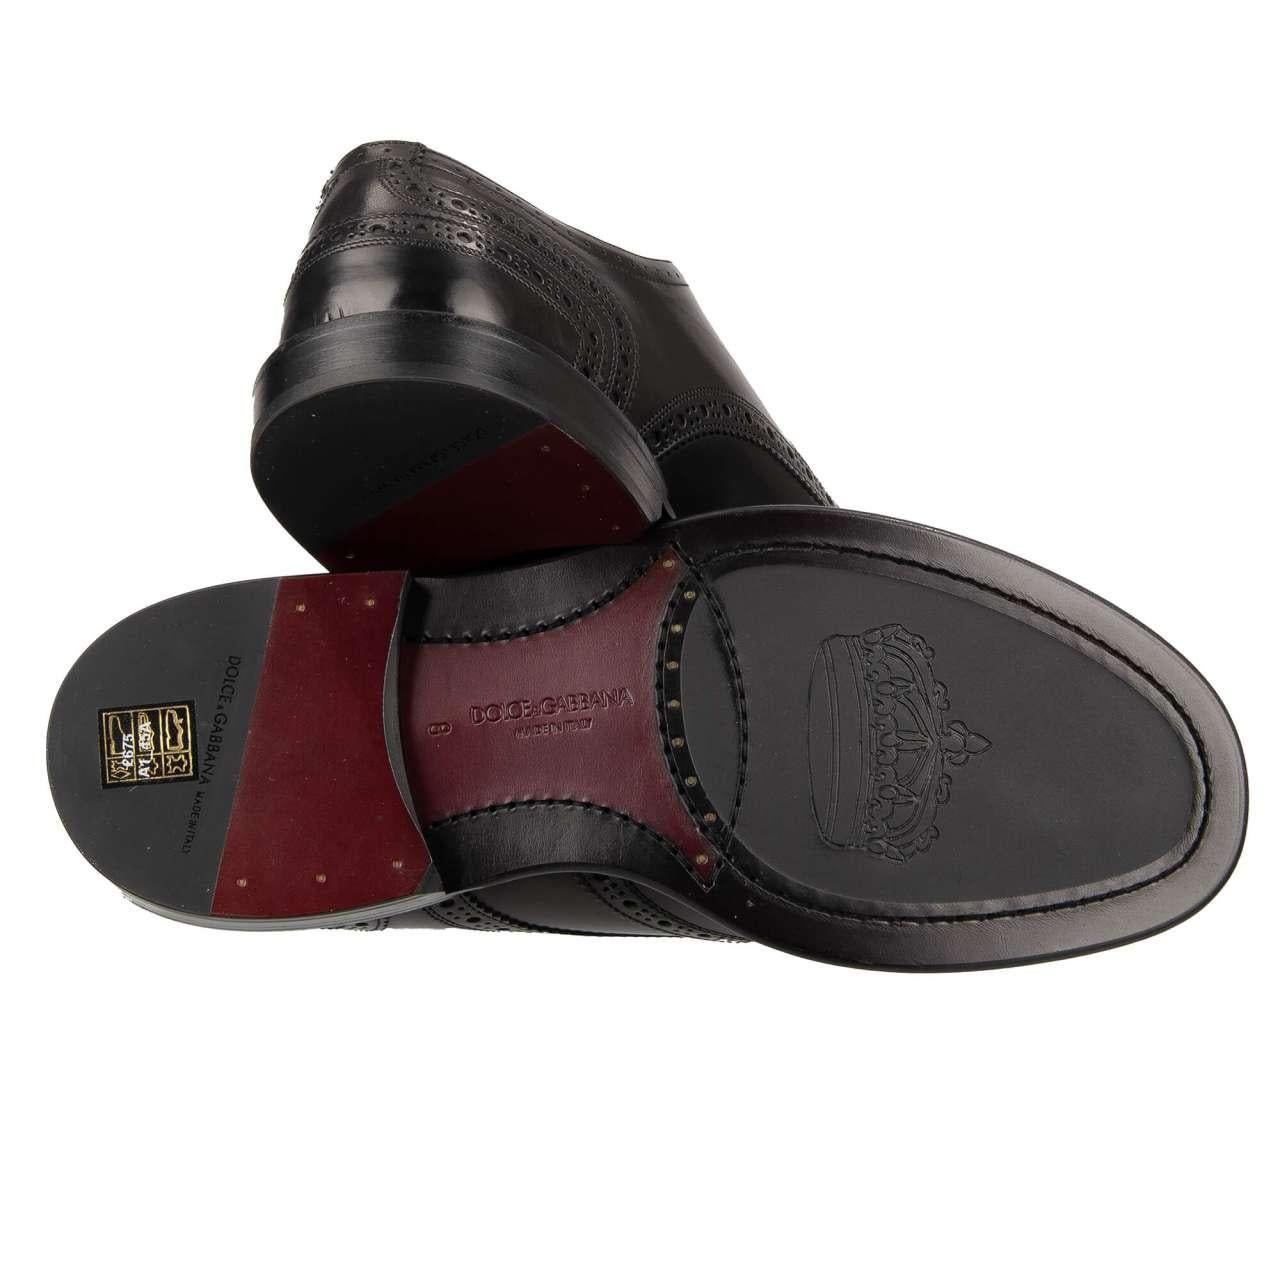 Dolce & Gabbana - DG Logo Formal Calf Leather Derby Shoes MARSALA Black EUR 44.5 For Sale 3